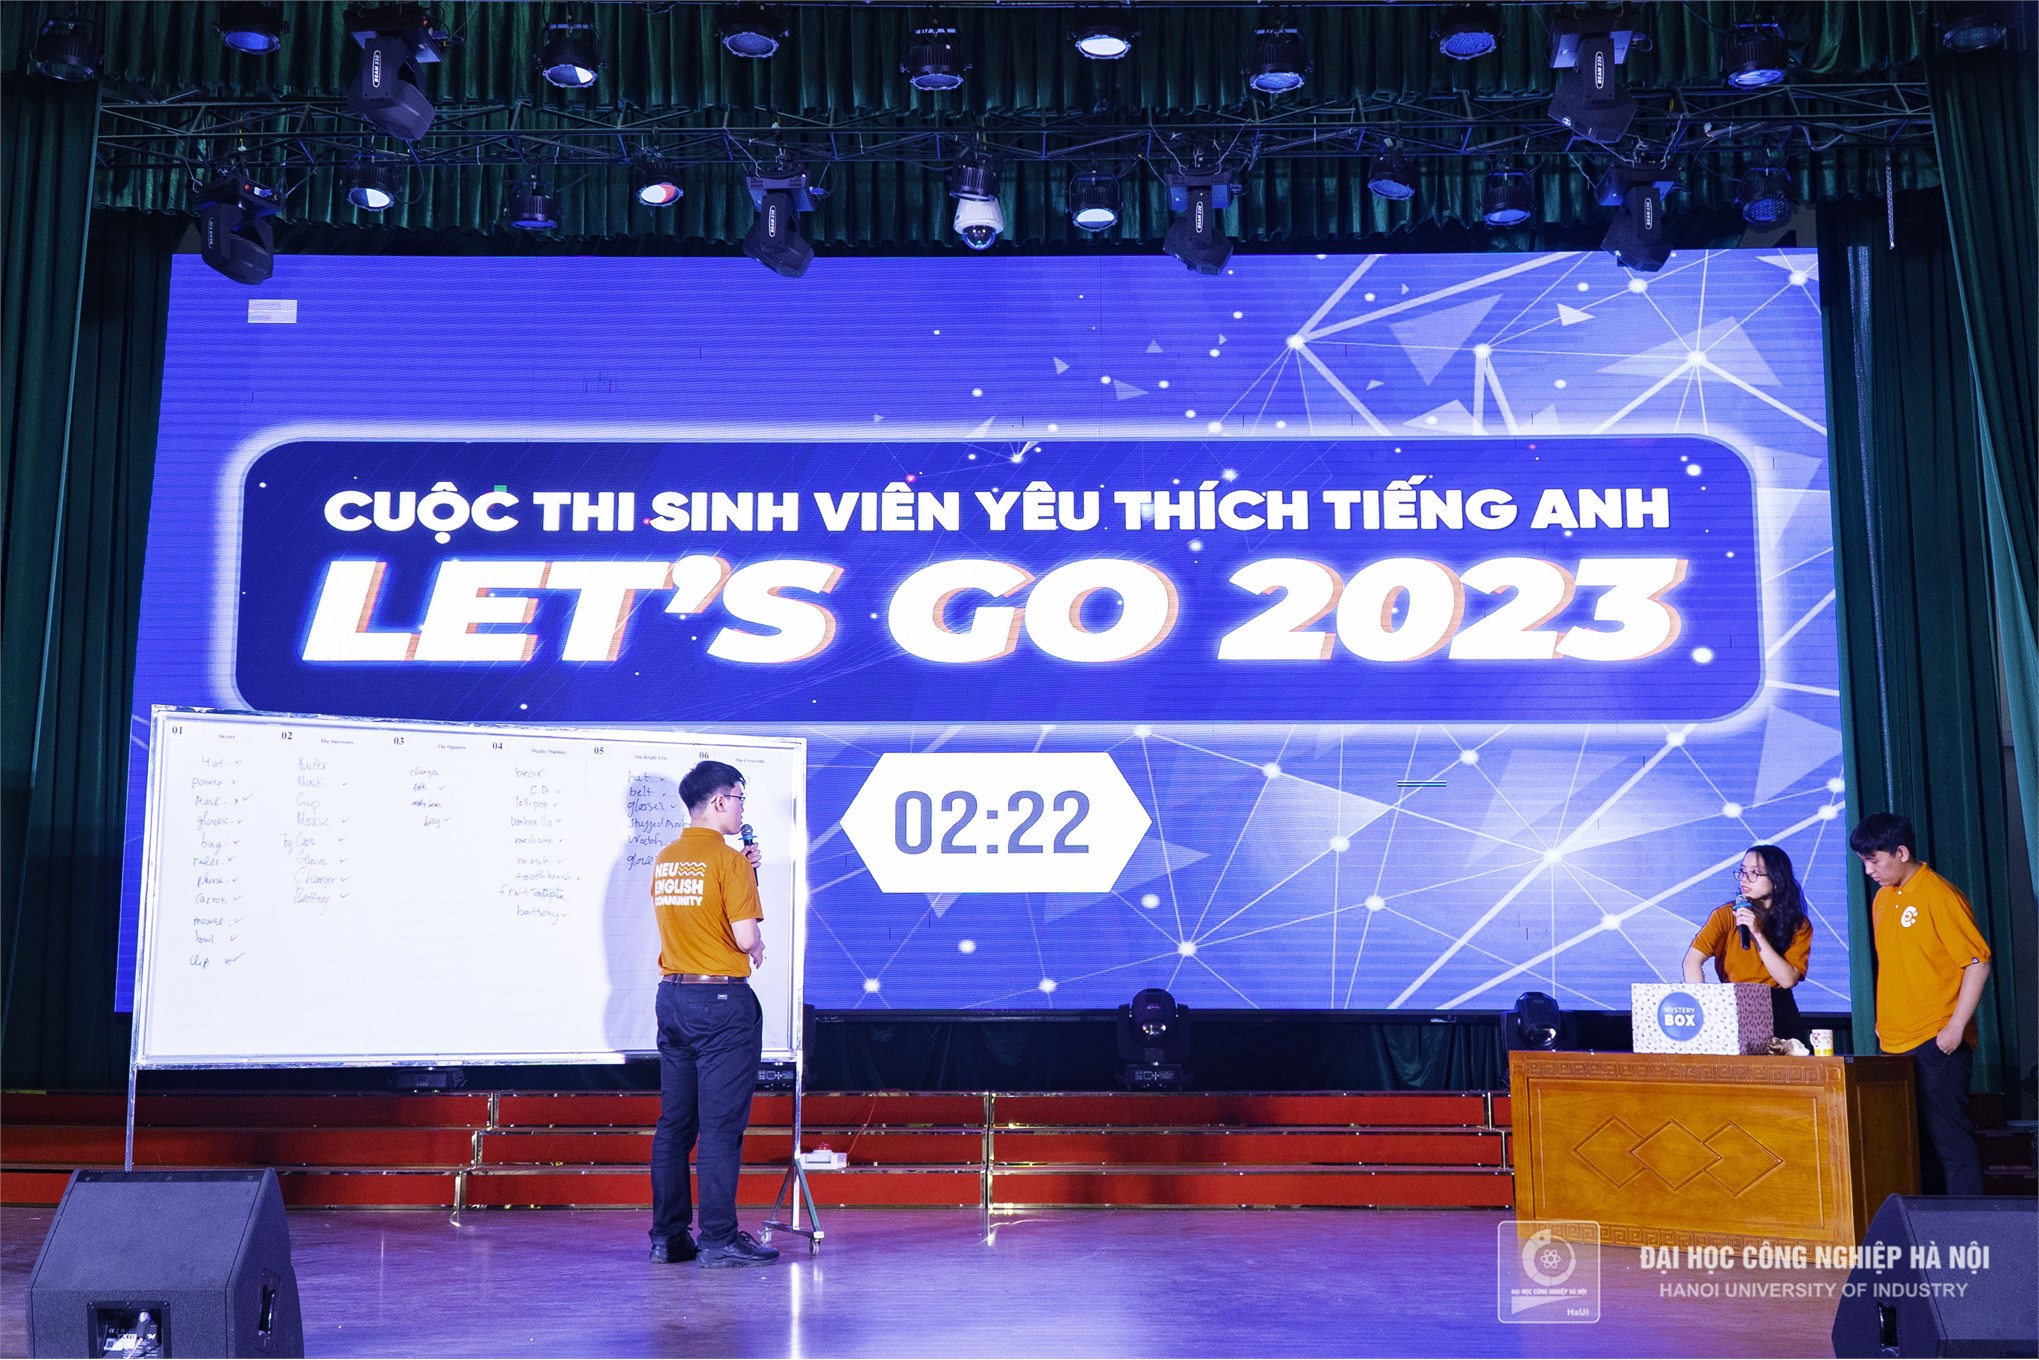 Chung kết cuộc thi Sinh viên yêu thích Tiếng Anh Let’s go 2023